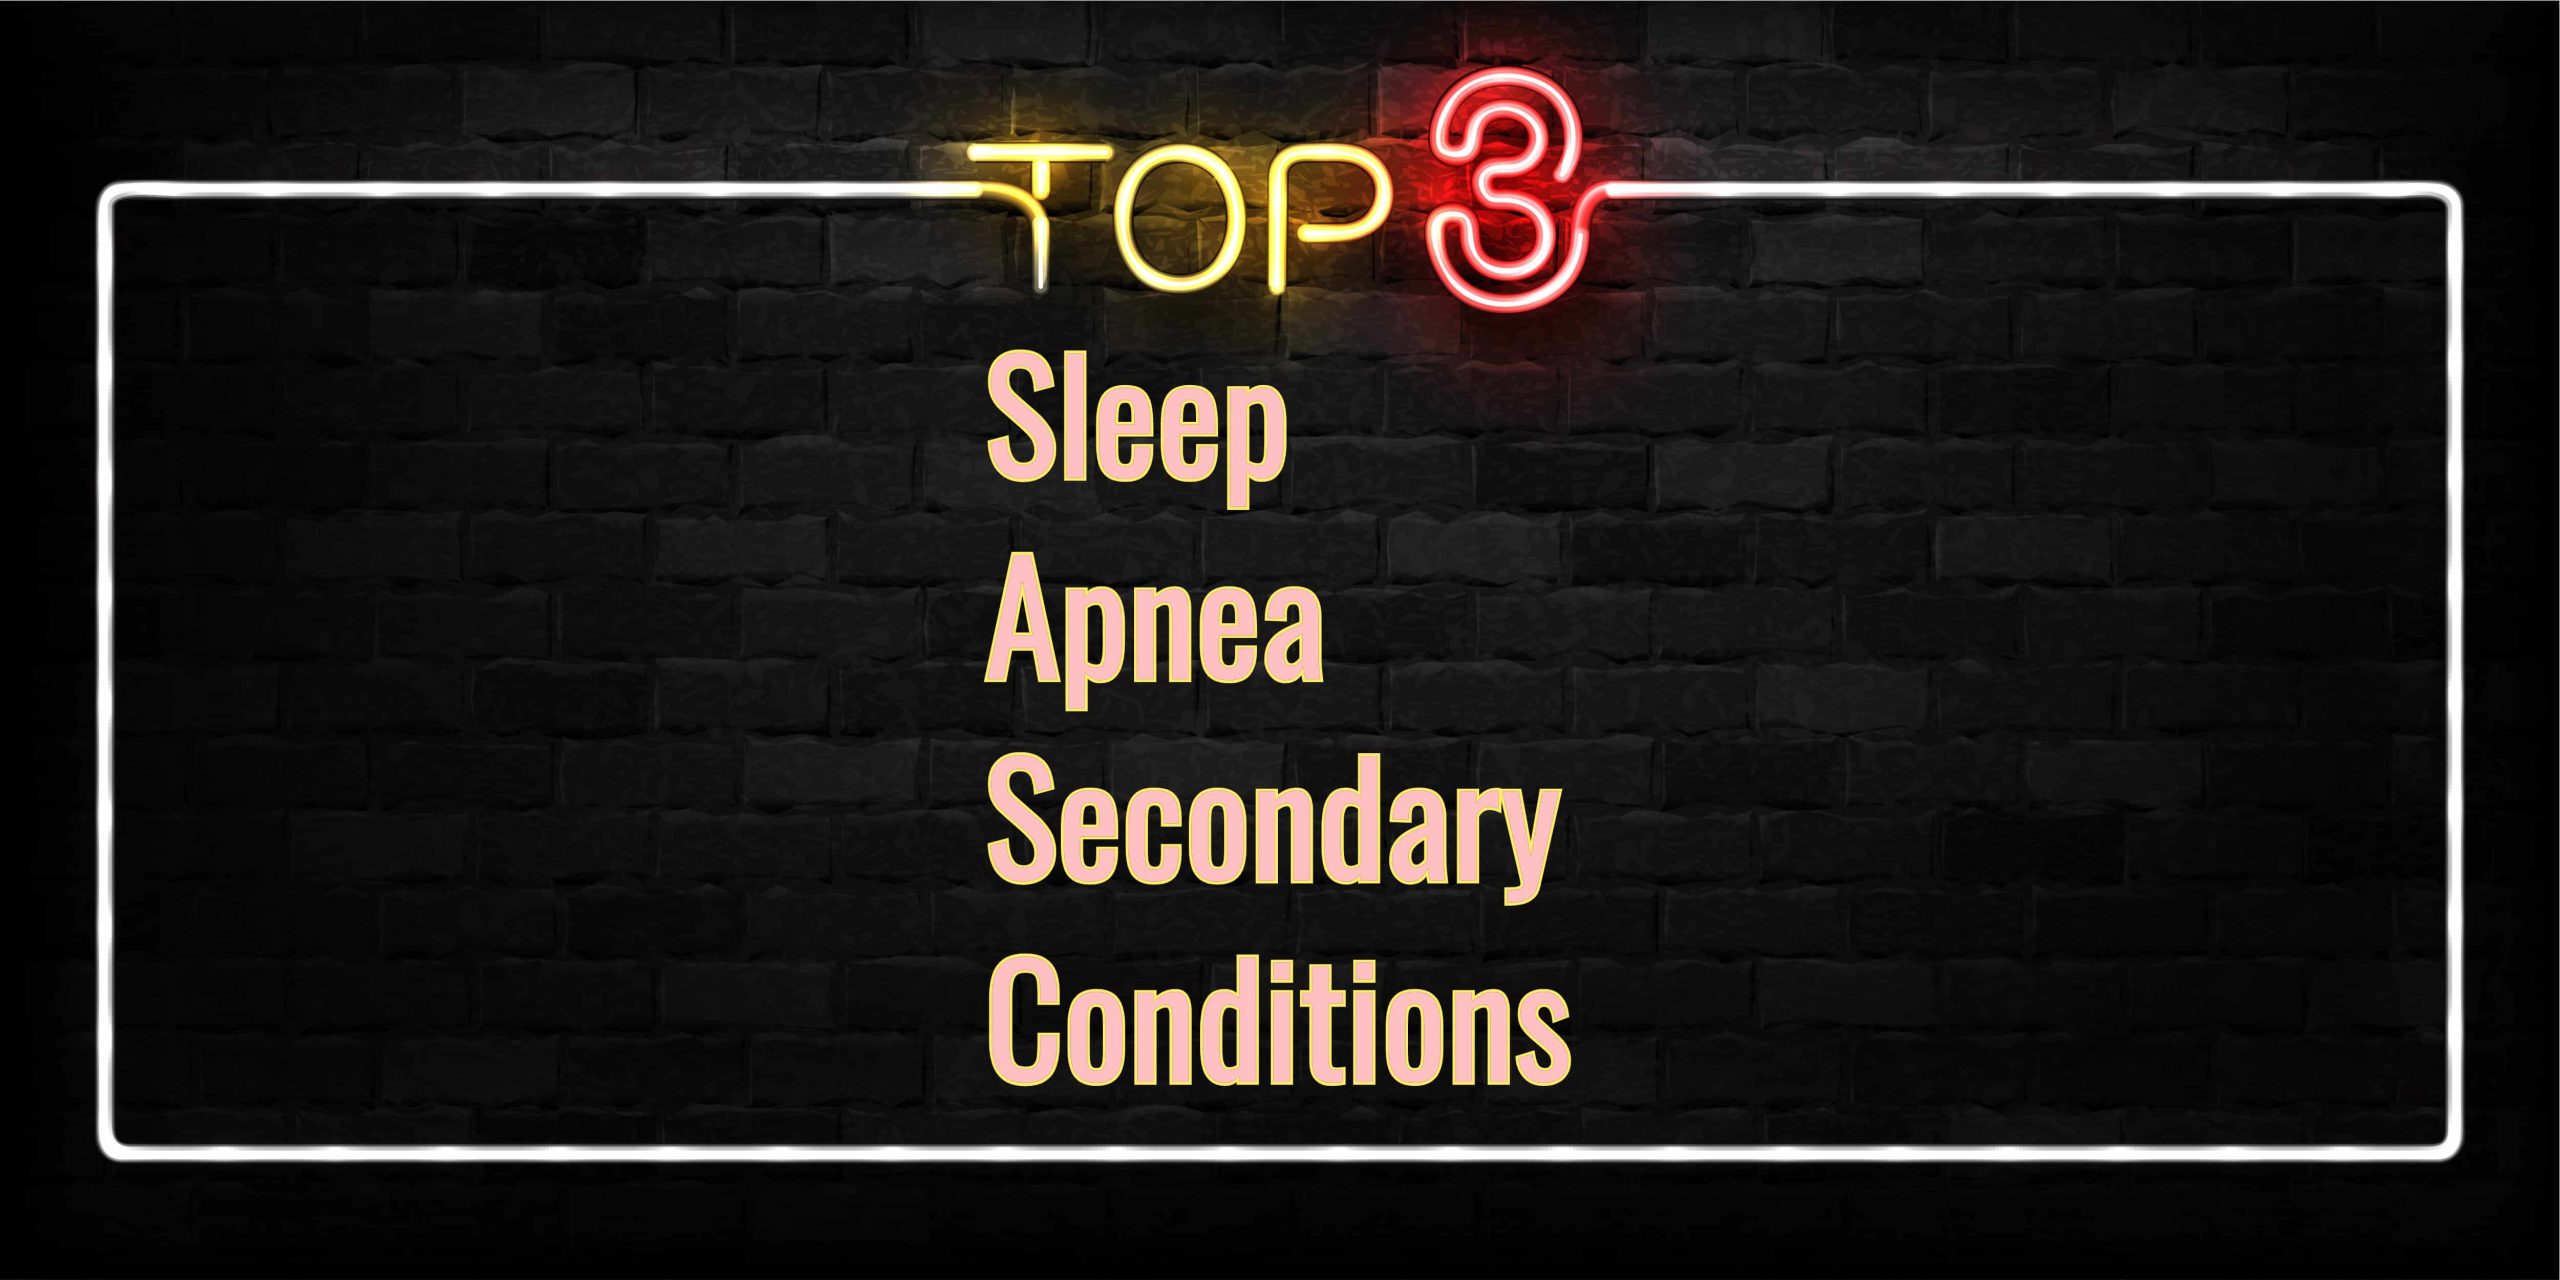 Top 3 Sleep Apnea Secondary Conditions